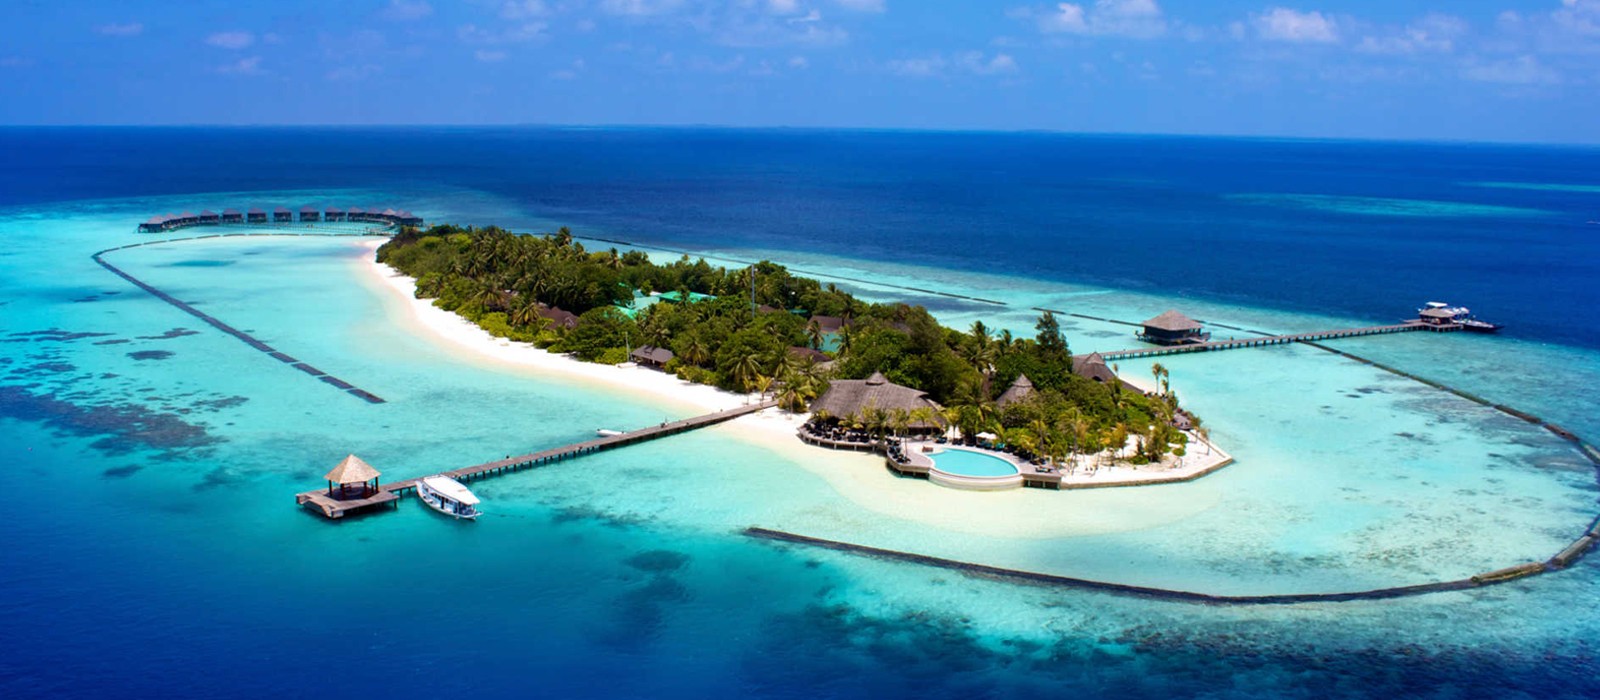 Luxury Maldives Holiday Packages Komandoo Maldives Header2